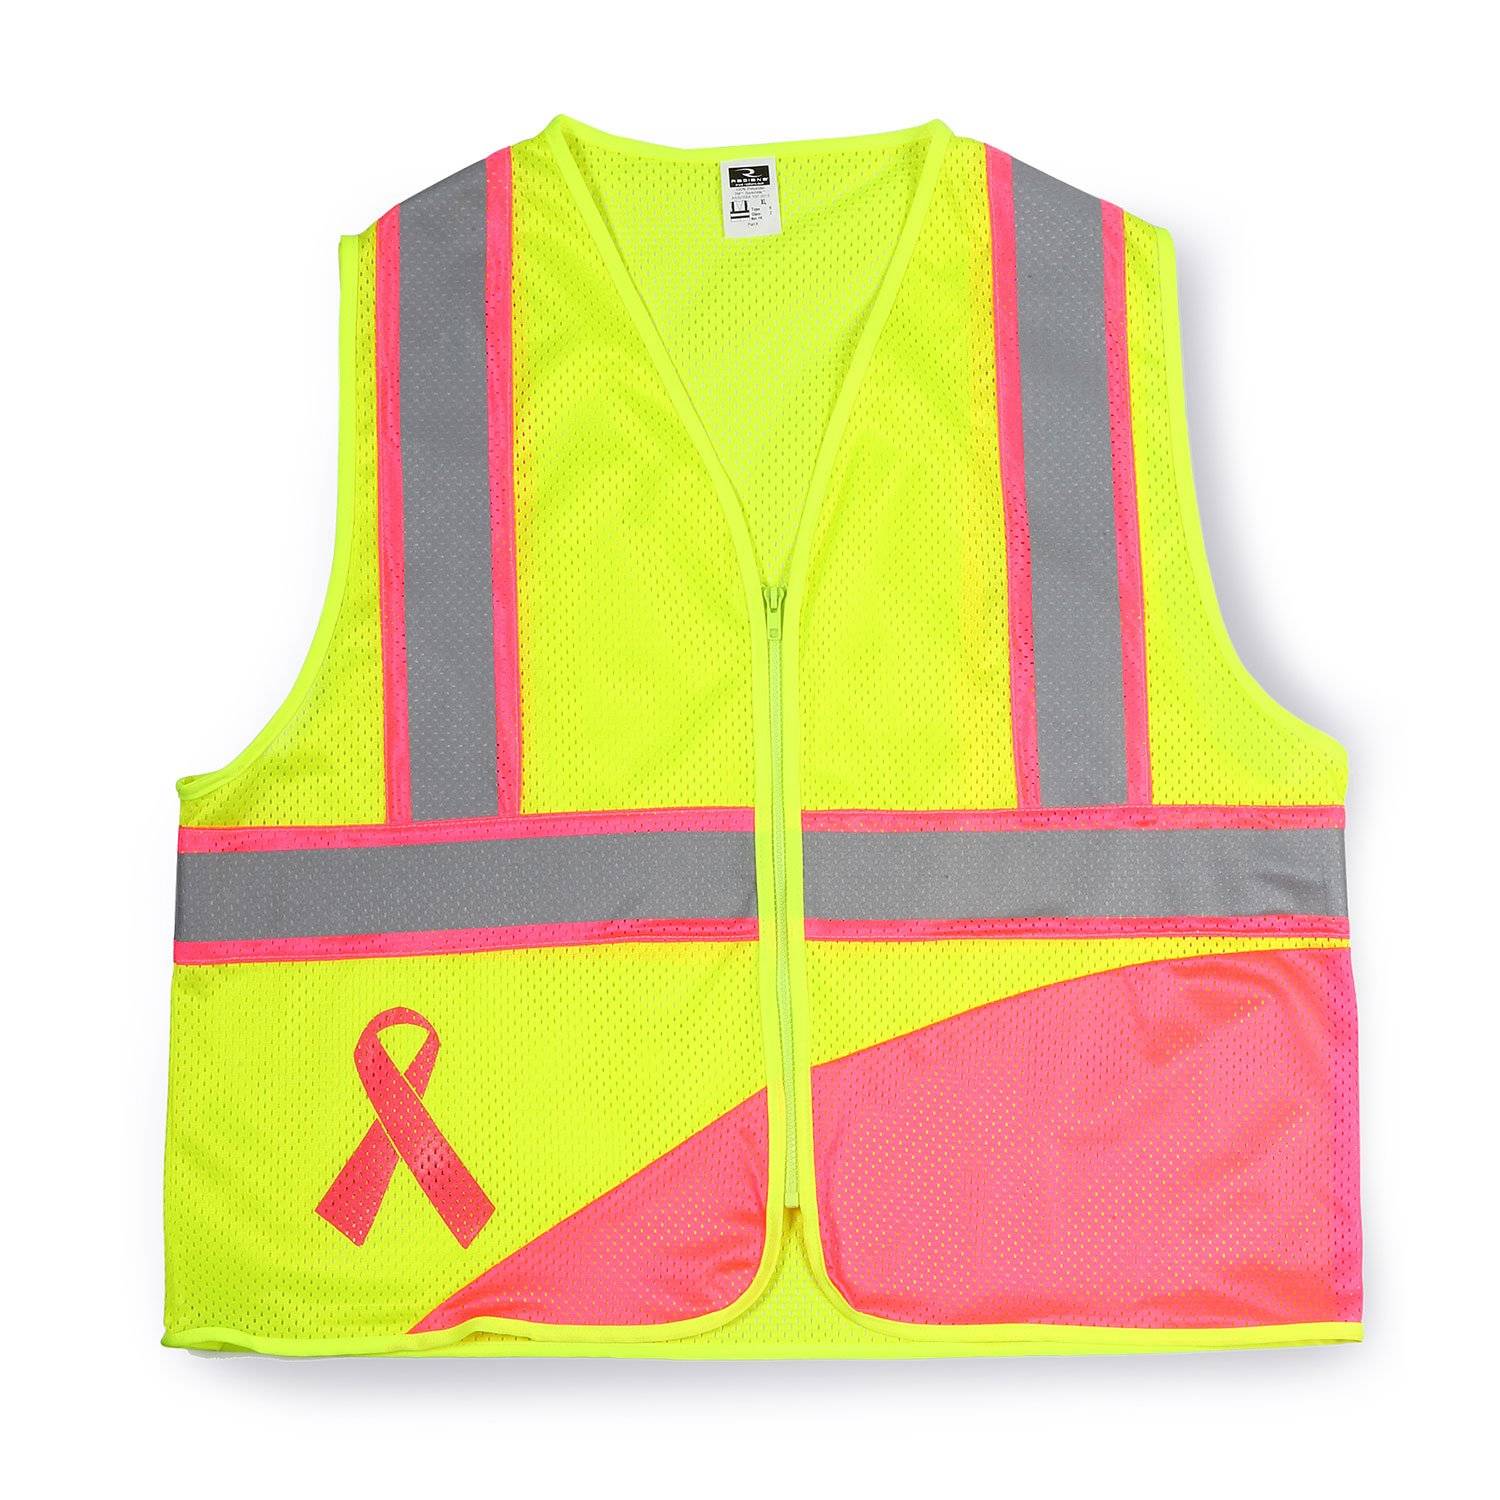 Radians ANSI II Breast Cancer Awareness Safety Vest